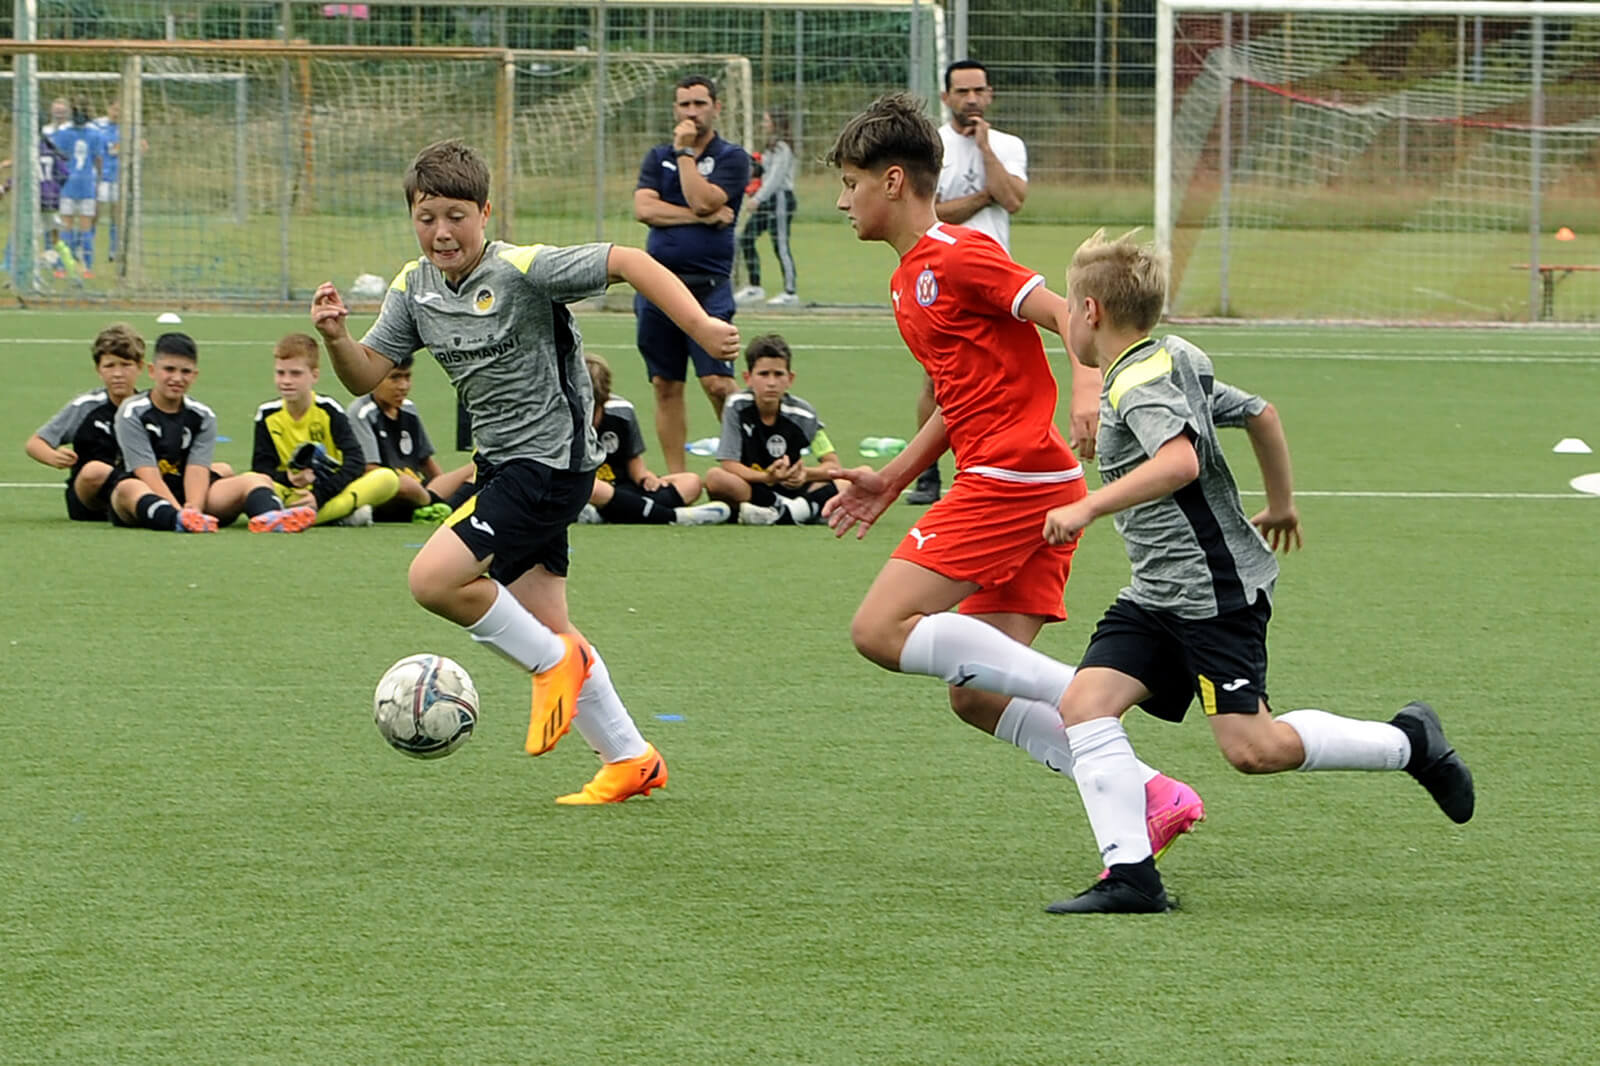 IM FORUM Cup startet Morgen ++ VfR Mannheim Gastgeber für 180 Kinder- und Nachwuchsteams aus der Region